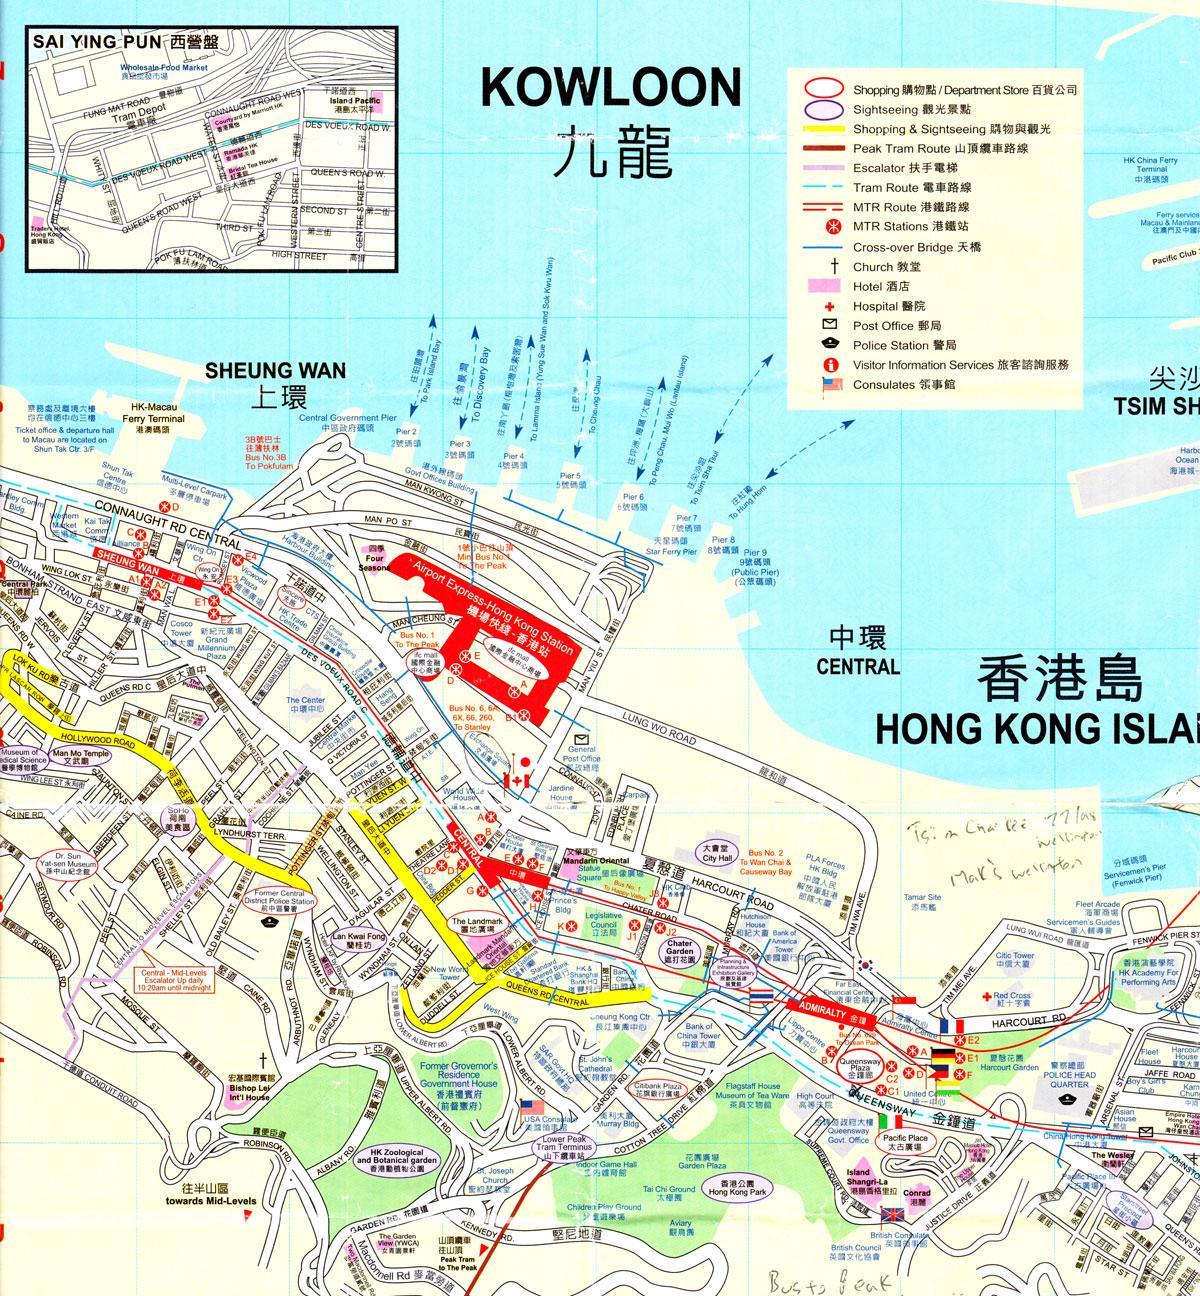 کی بندرگاہ ہانگ کانگ کا نقشہ